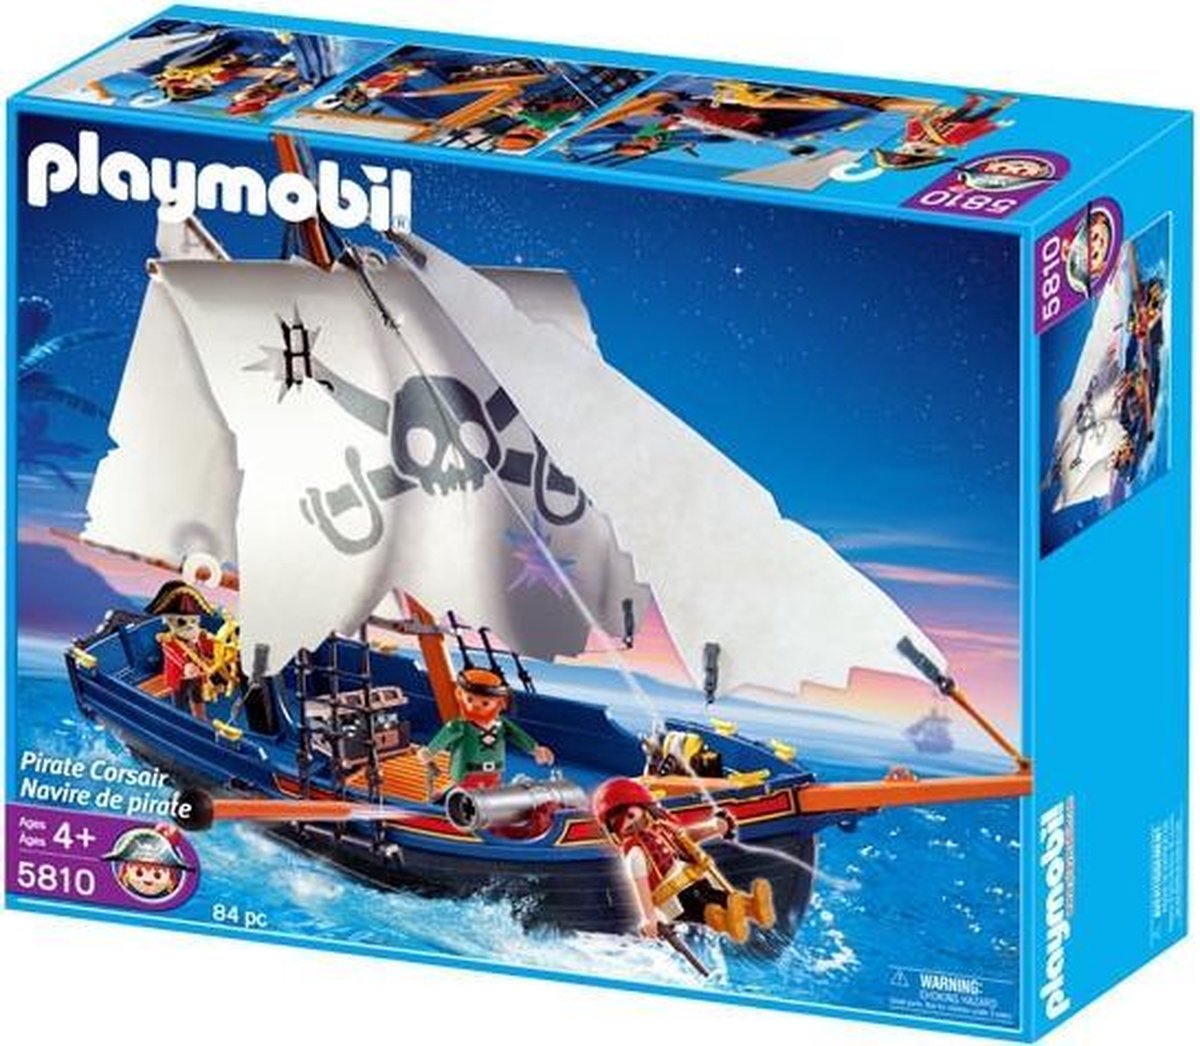 Playmobil Piratenschip - 5810 bol.com